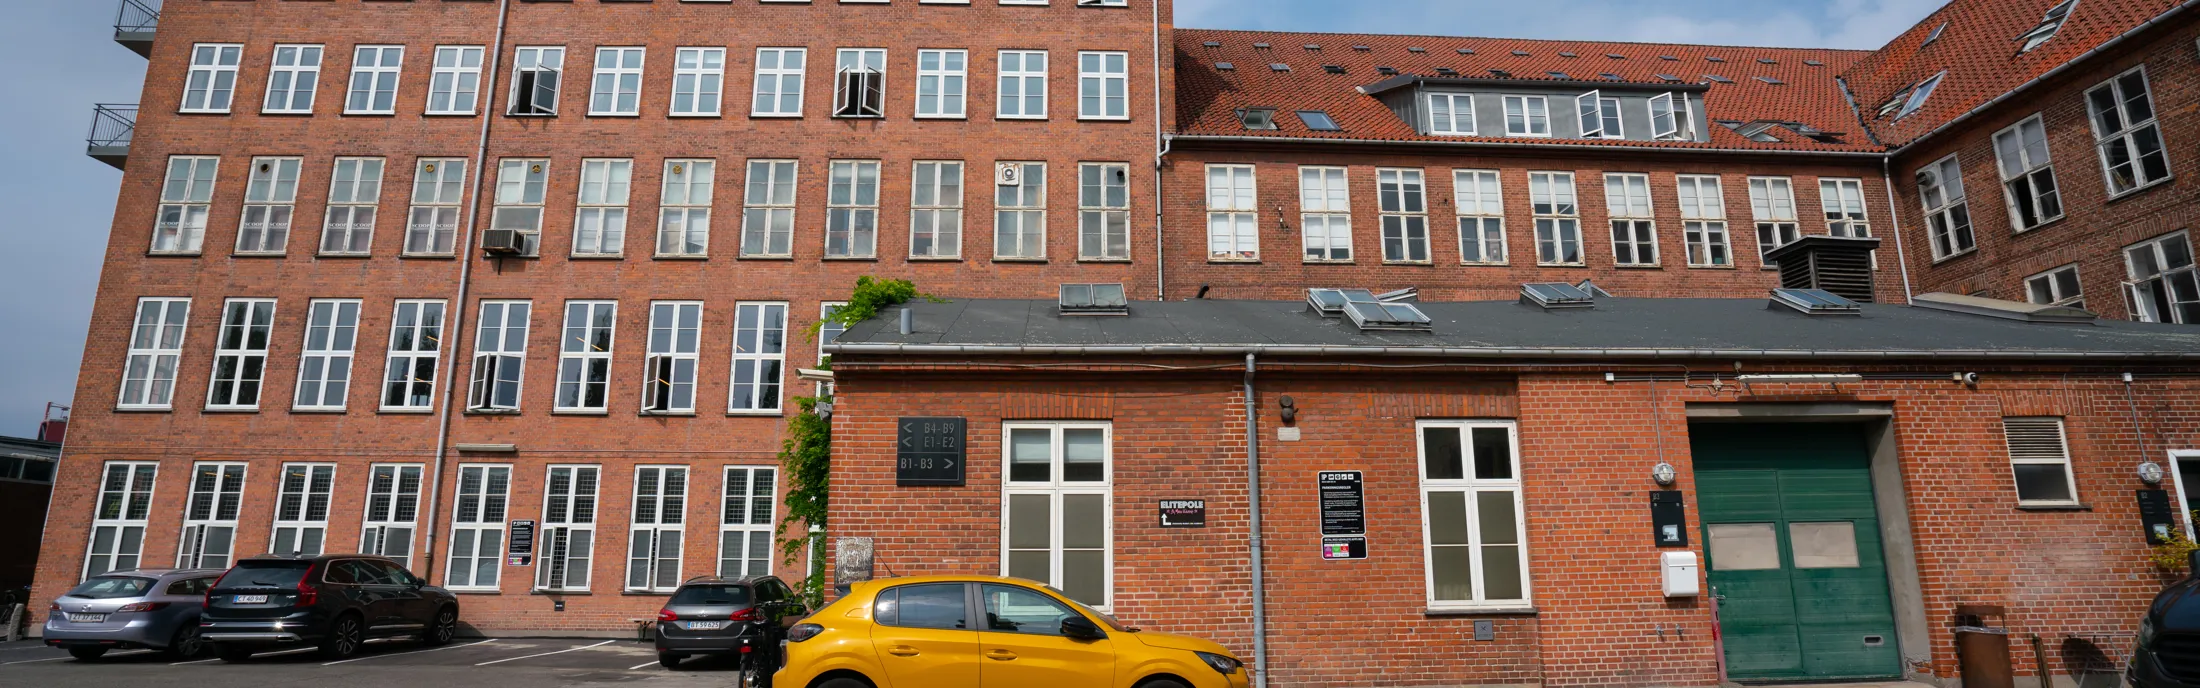 Facade  of parkering på Prags Boulevard 49 i København 2022